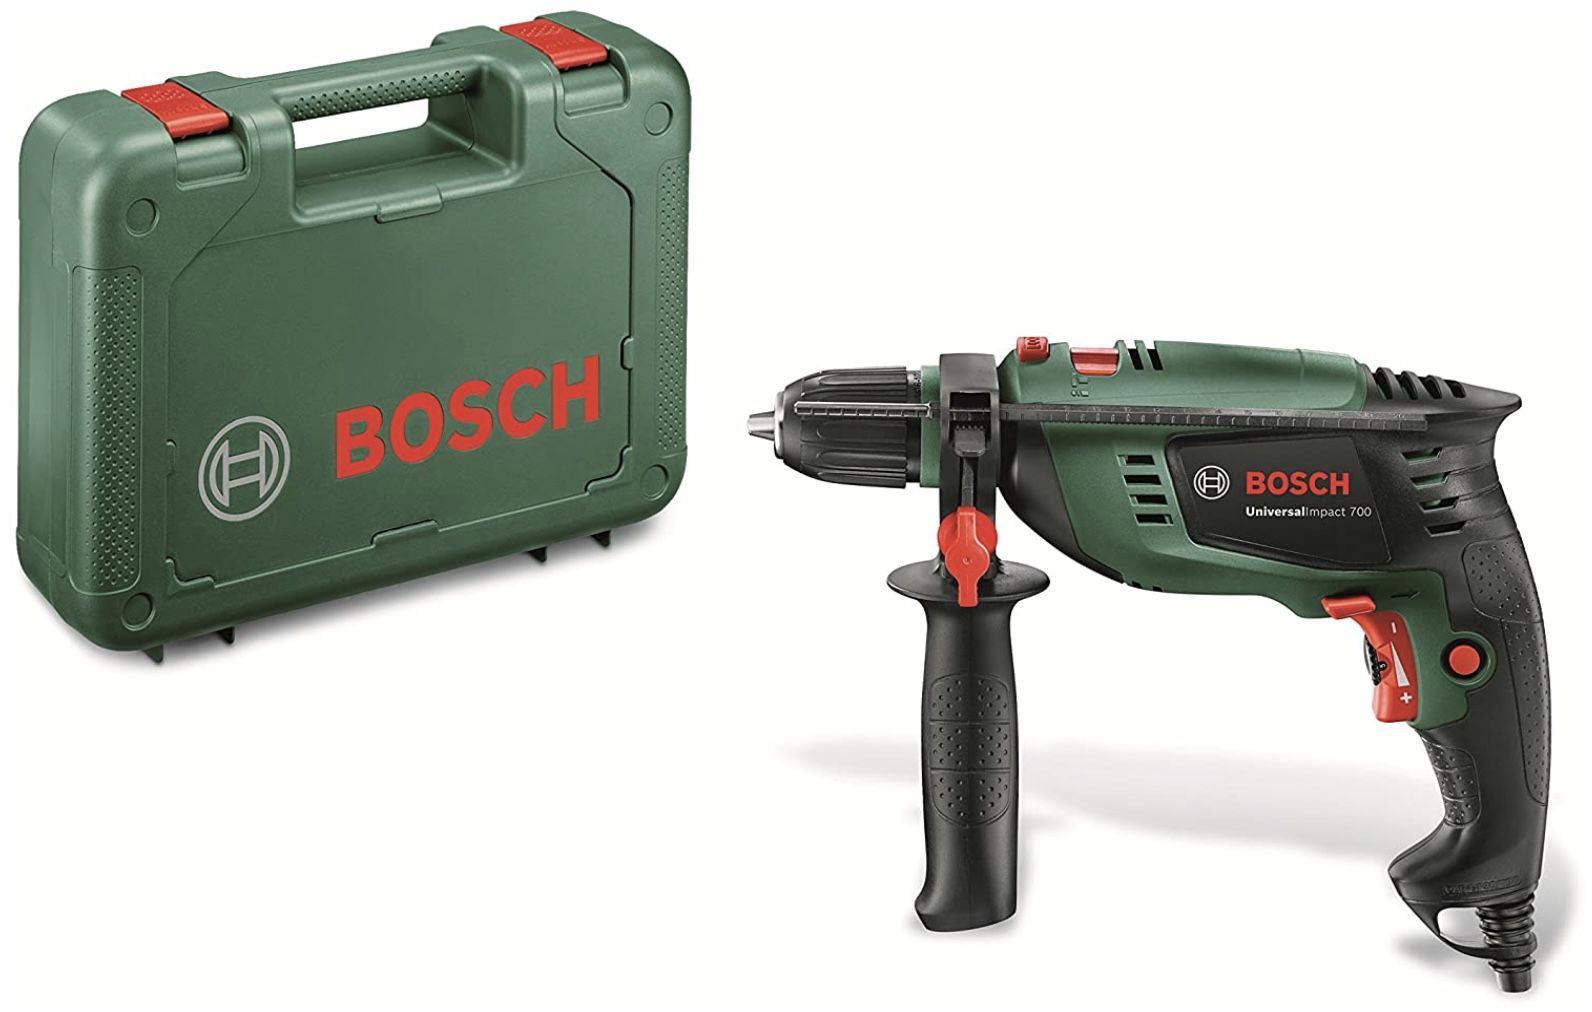 Bosch Schlagbohrmaschine UniversalImpact 700 mit Zusatzhandgriff für 53,59€ (statt 67€)